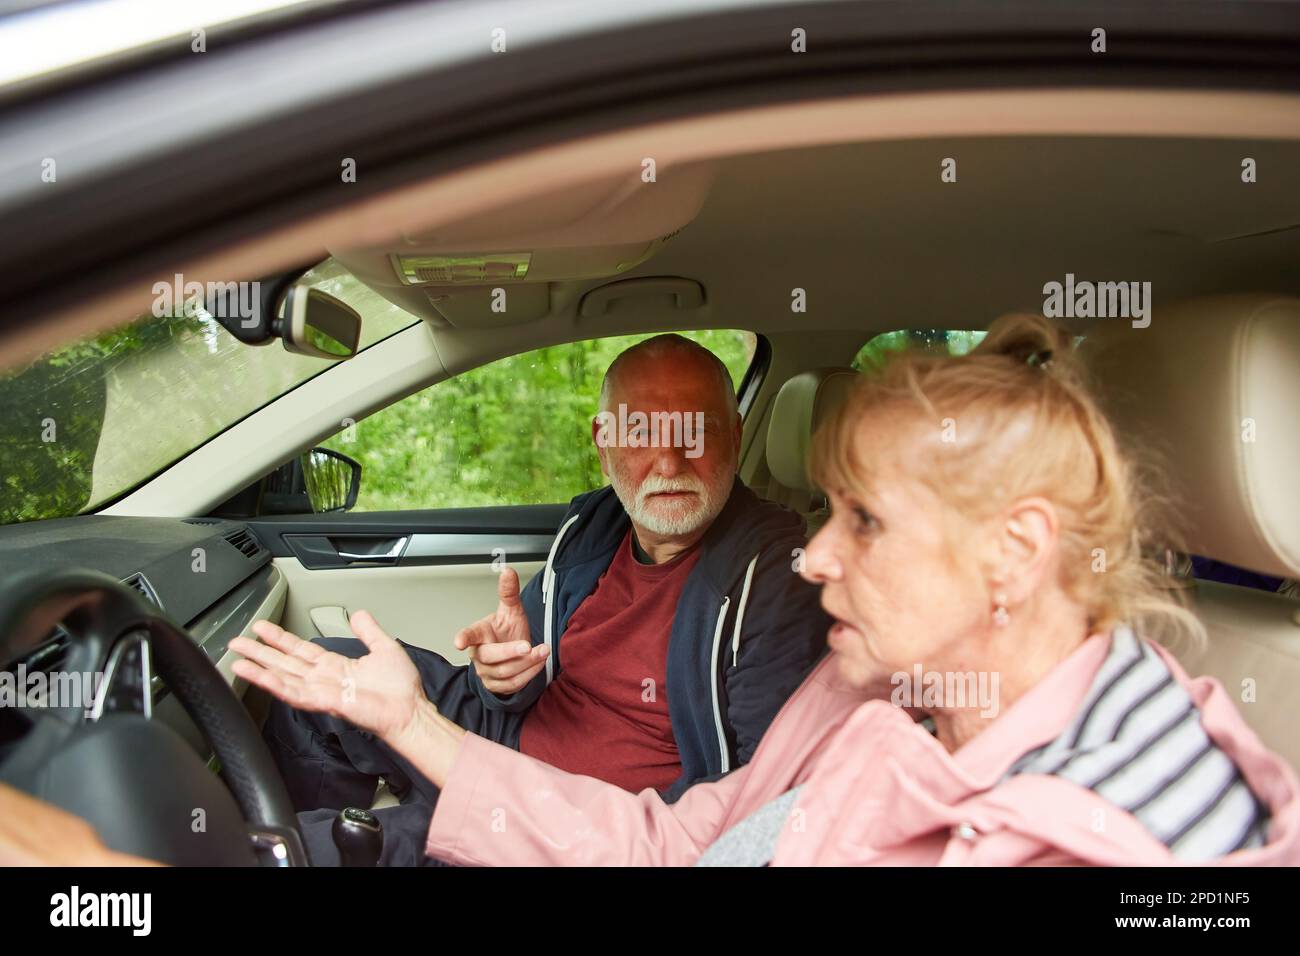 Un homme âgé en colère se faisant des gestuelle en parlant avec une femme en voiture pendant un voyage en voiture Banque D'Images